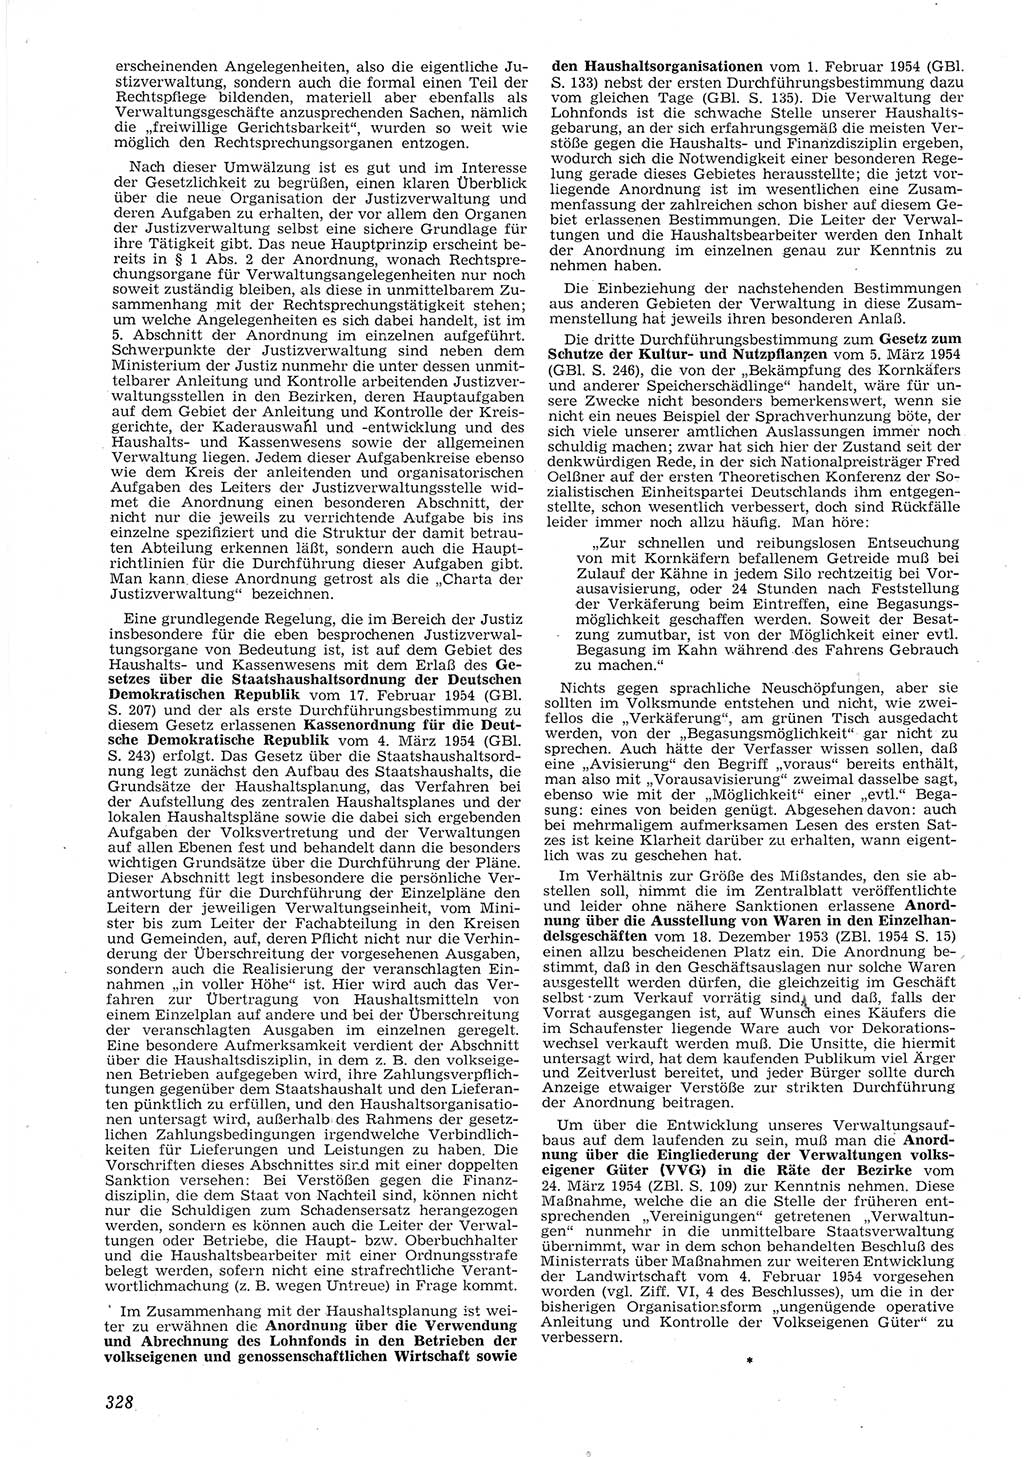 Neue Justiz (NJ), Zeitschrift für Recht und Rechtswissenschaft [Deutsche Demokratische Republik (DDR)], 8. Jahrgang 1954, Seite 328 (NJ DDR 1954, S. 328)